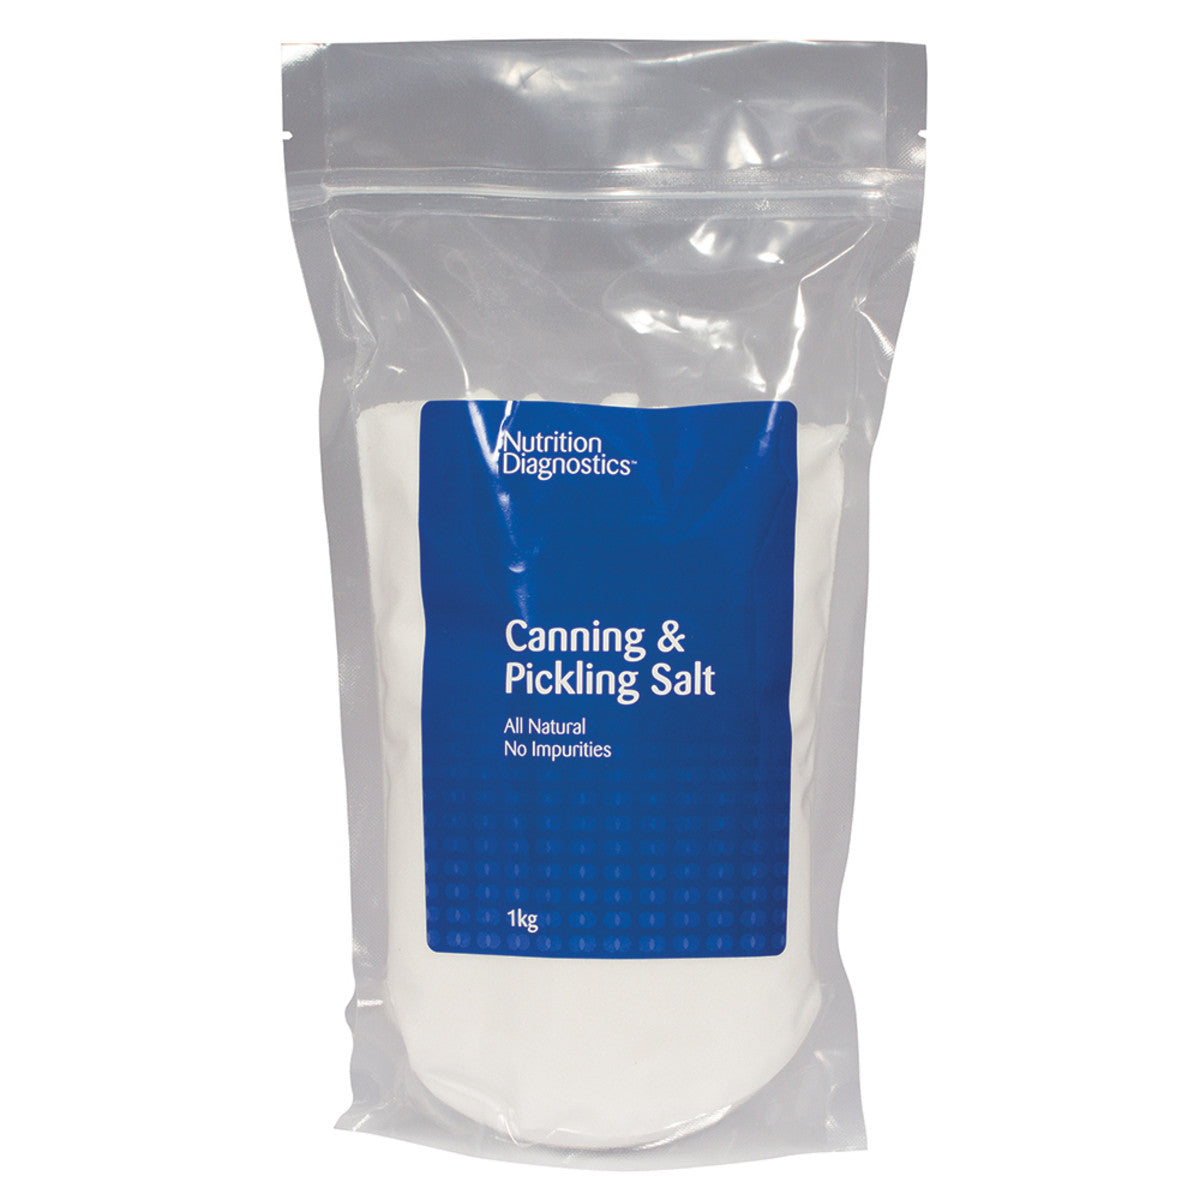 Nutrition Diagnostics Canning and Pickling Salt 1kg